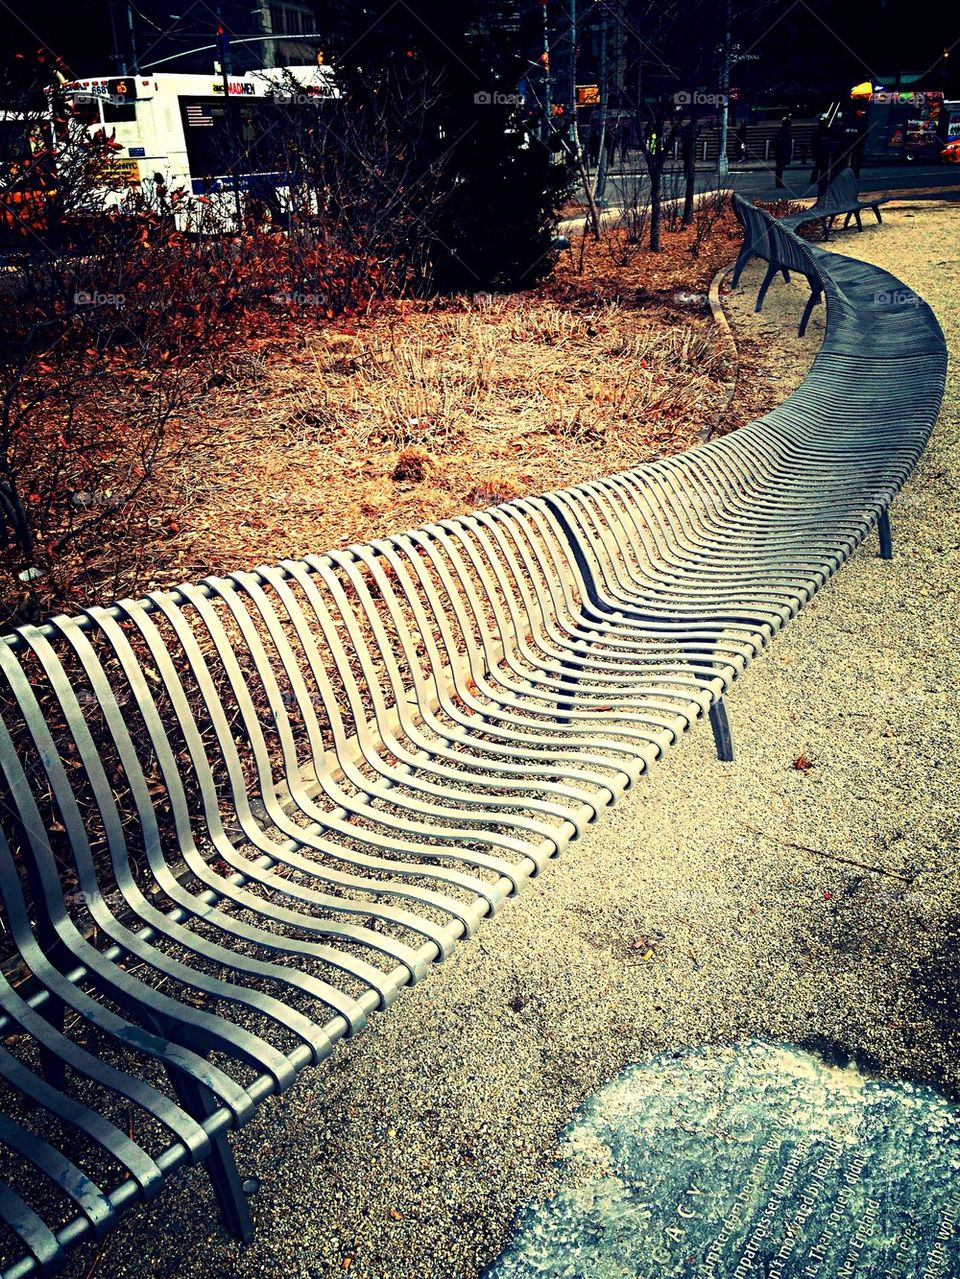 Public curving bench